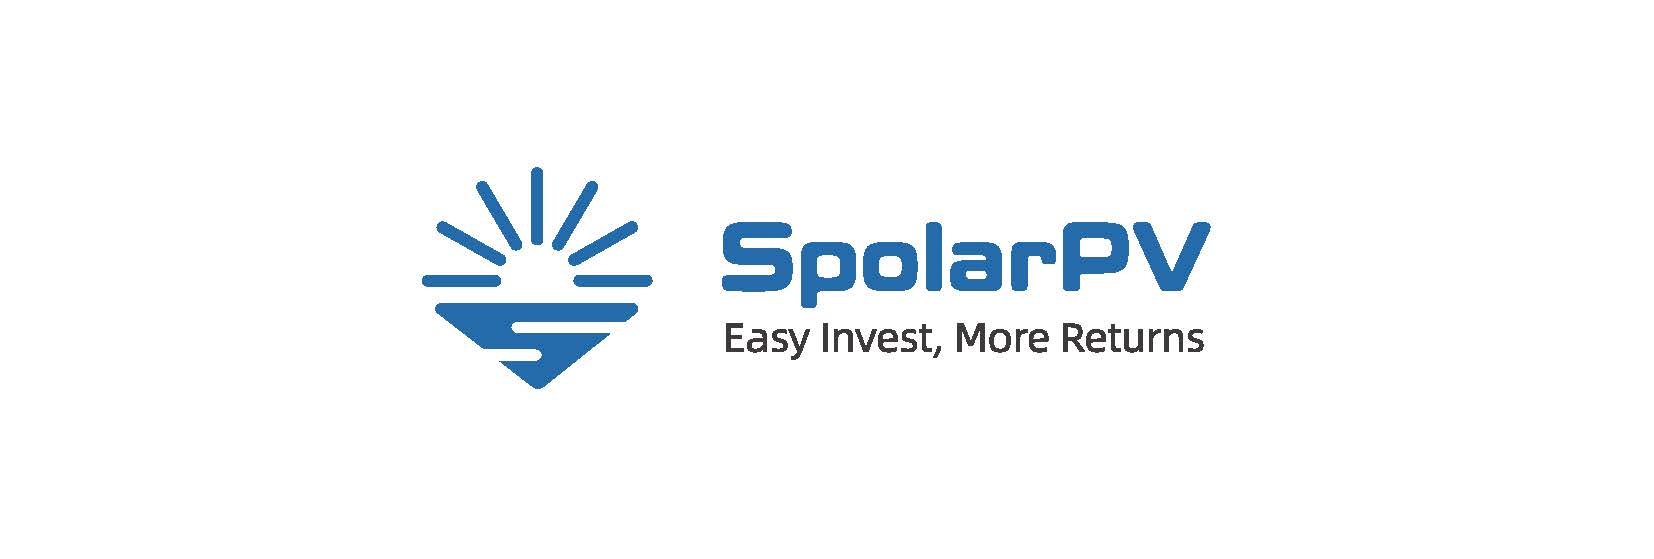 EF10-SpolarPV logo-easy invest.jpg